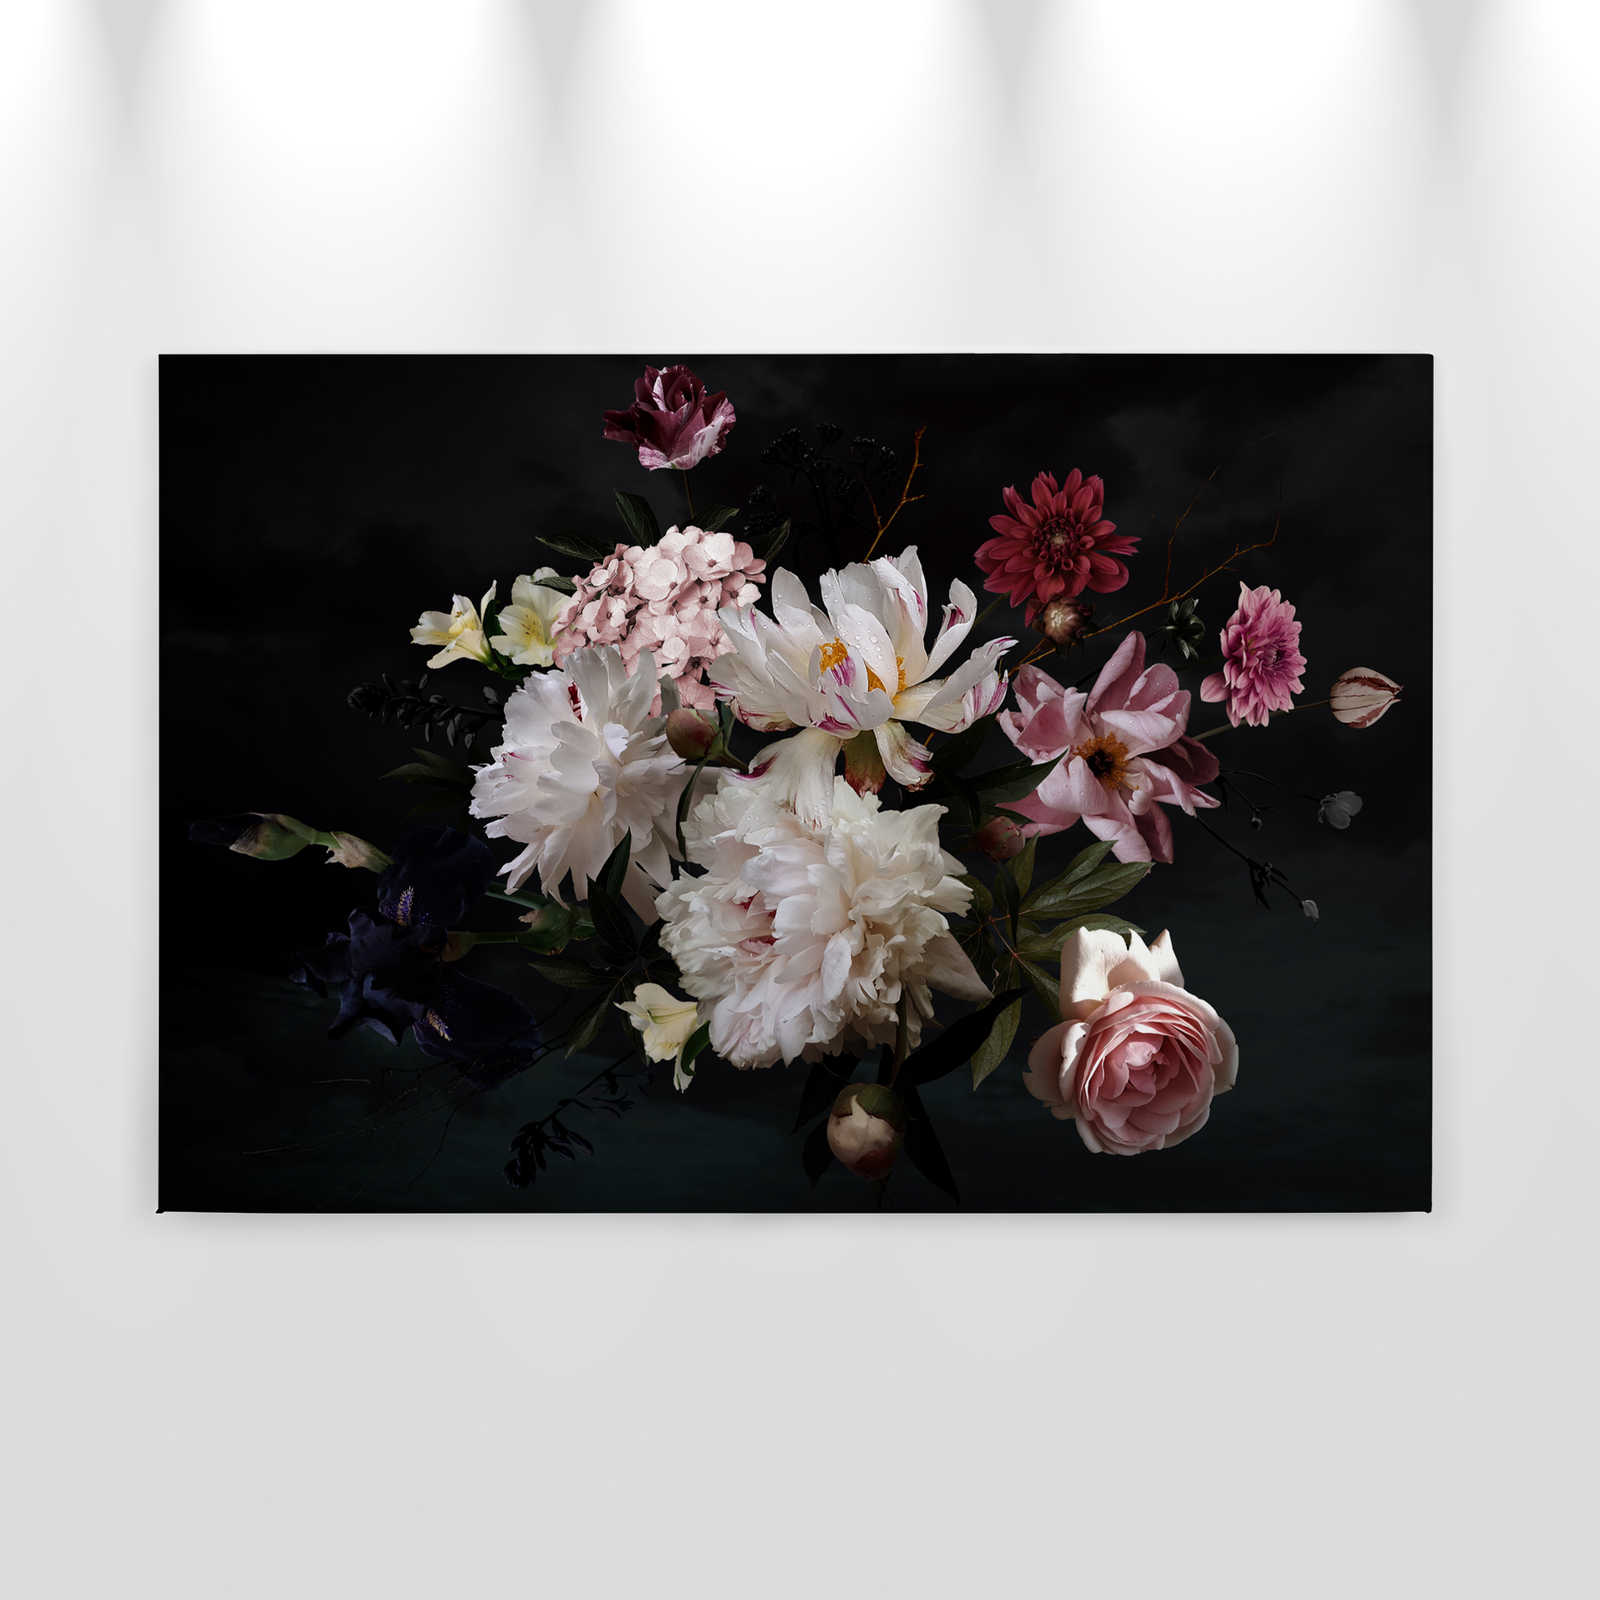             Toile Bouquet de fleurs - 0,90 m x 0,60 m
        